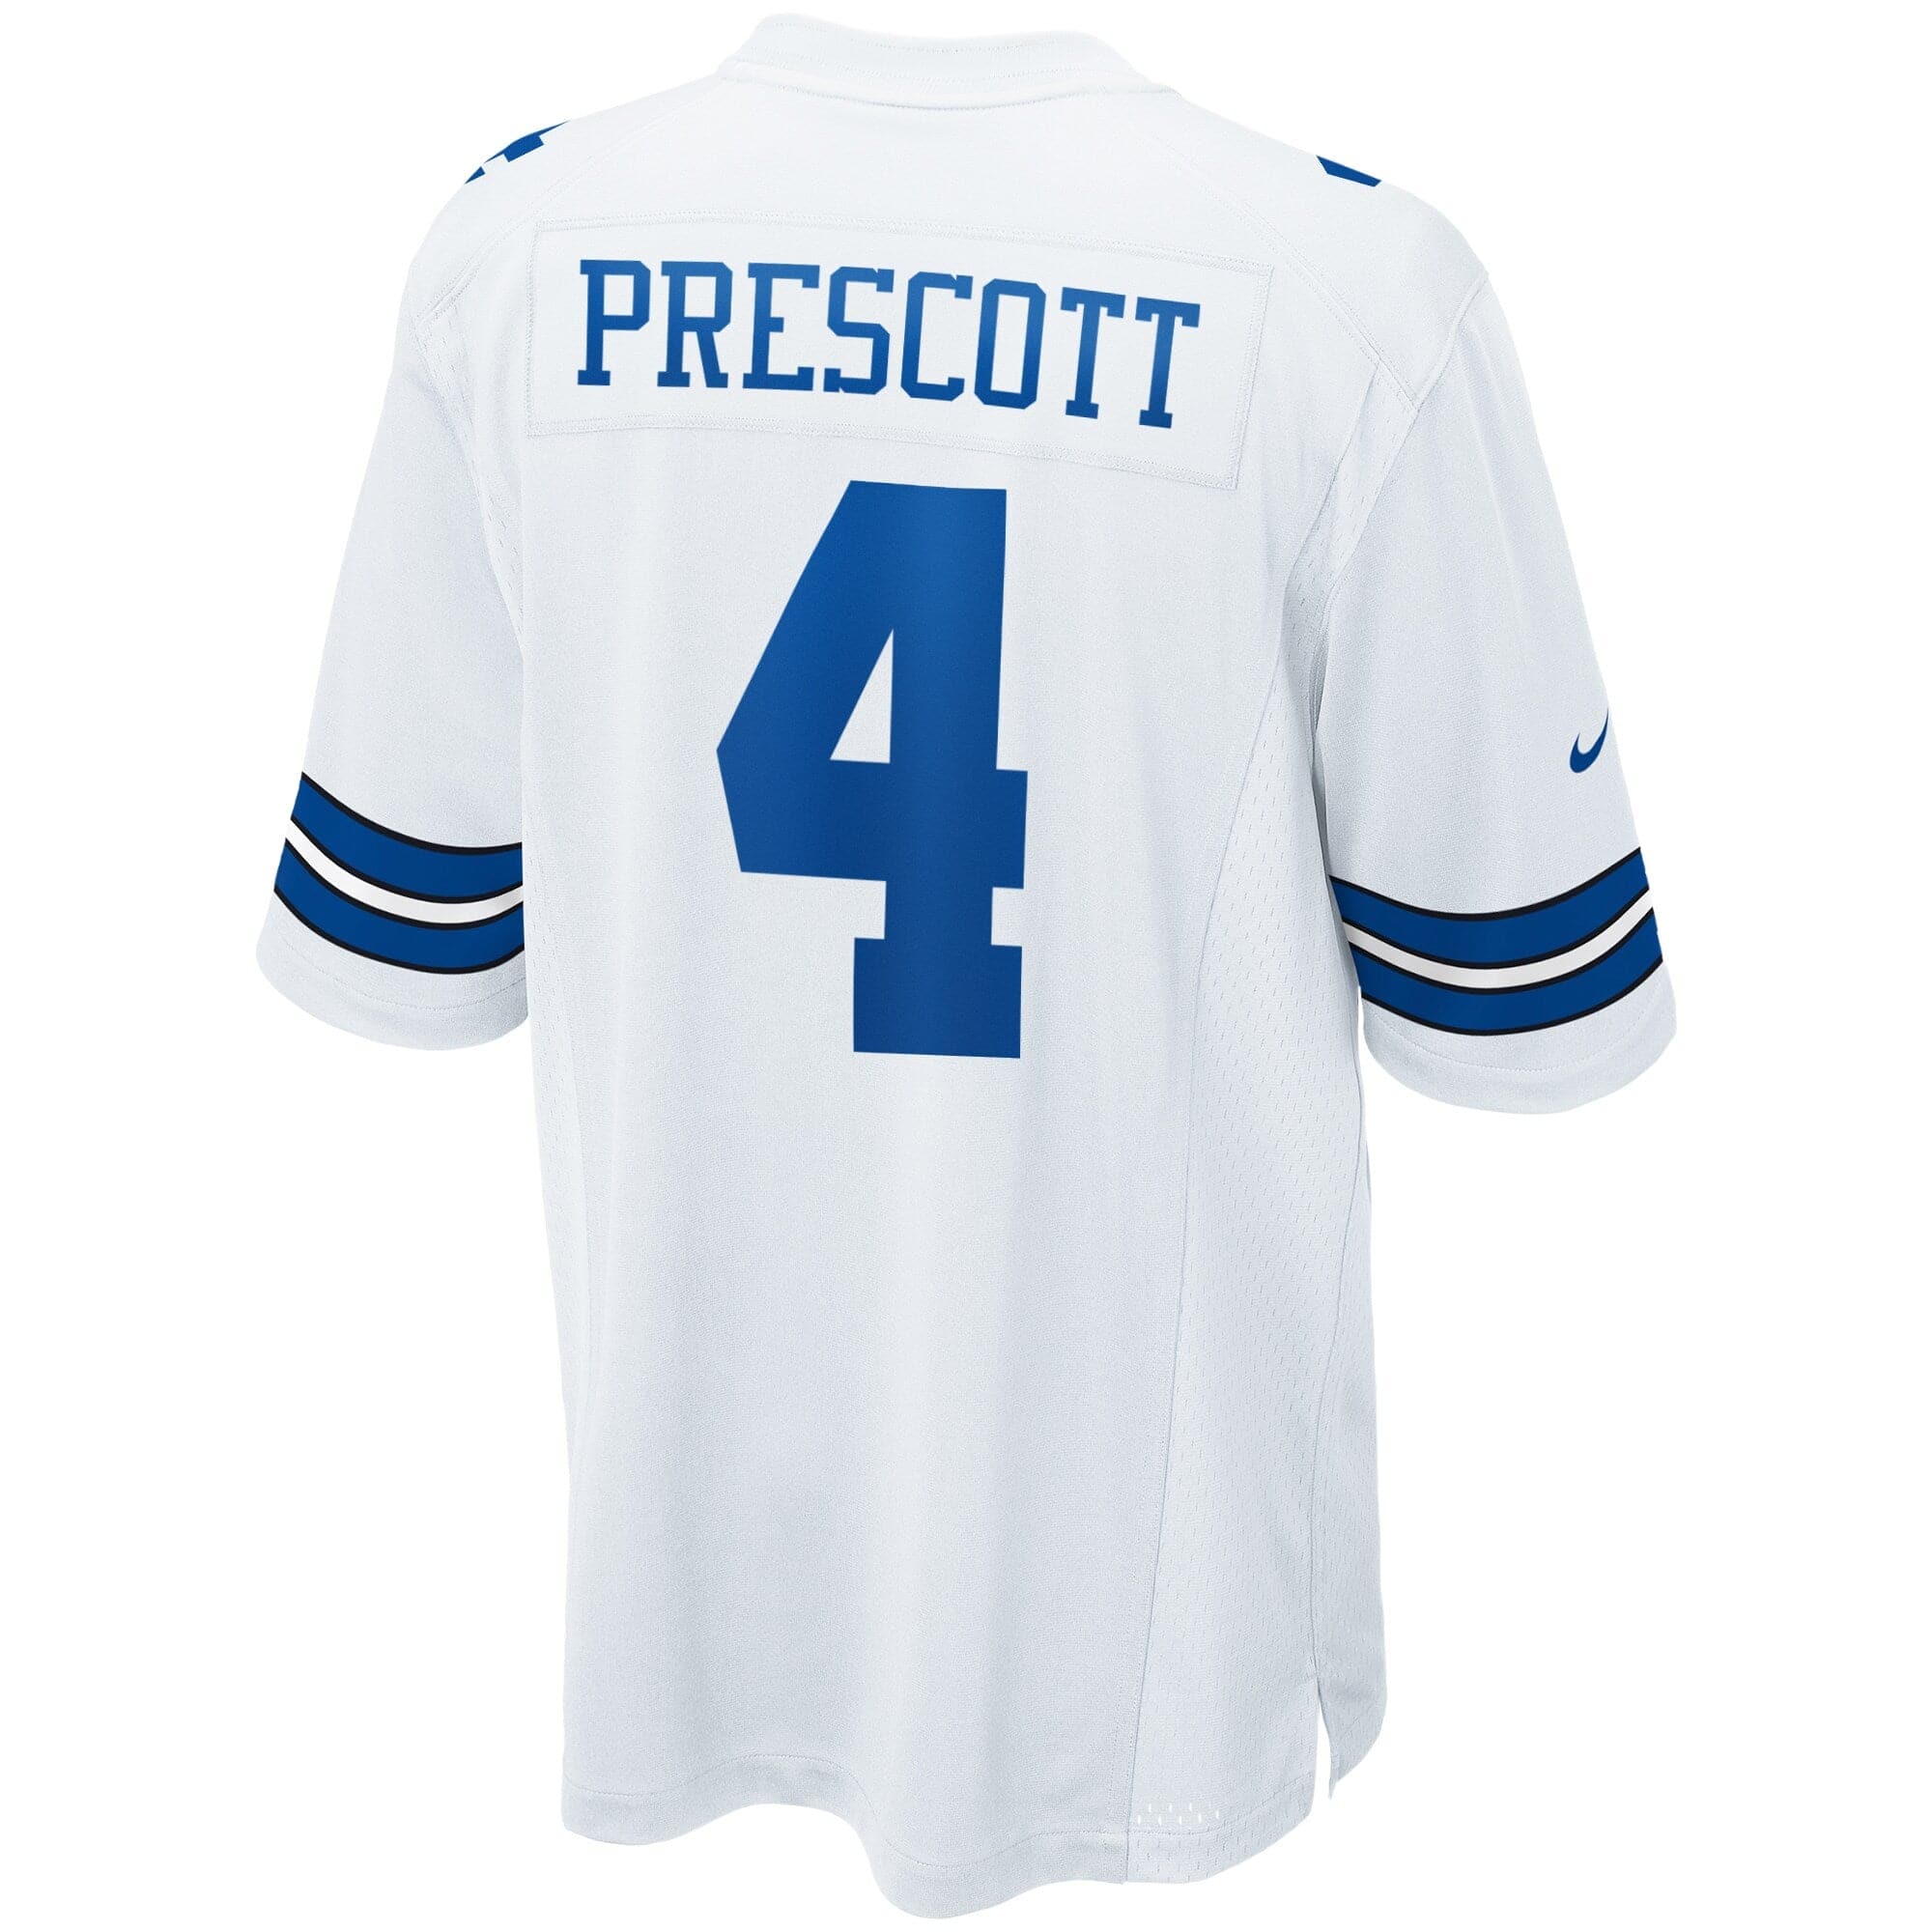 Dak Prescott Dallas Cowboys Nike NFL Game Jersey - White